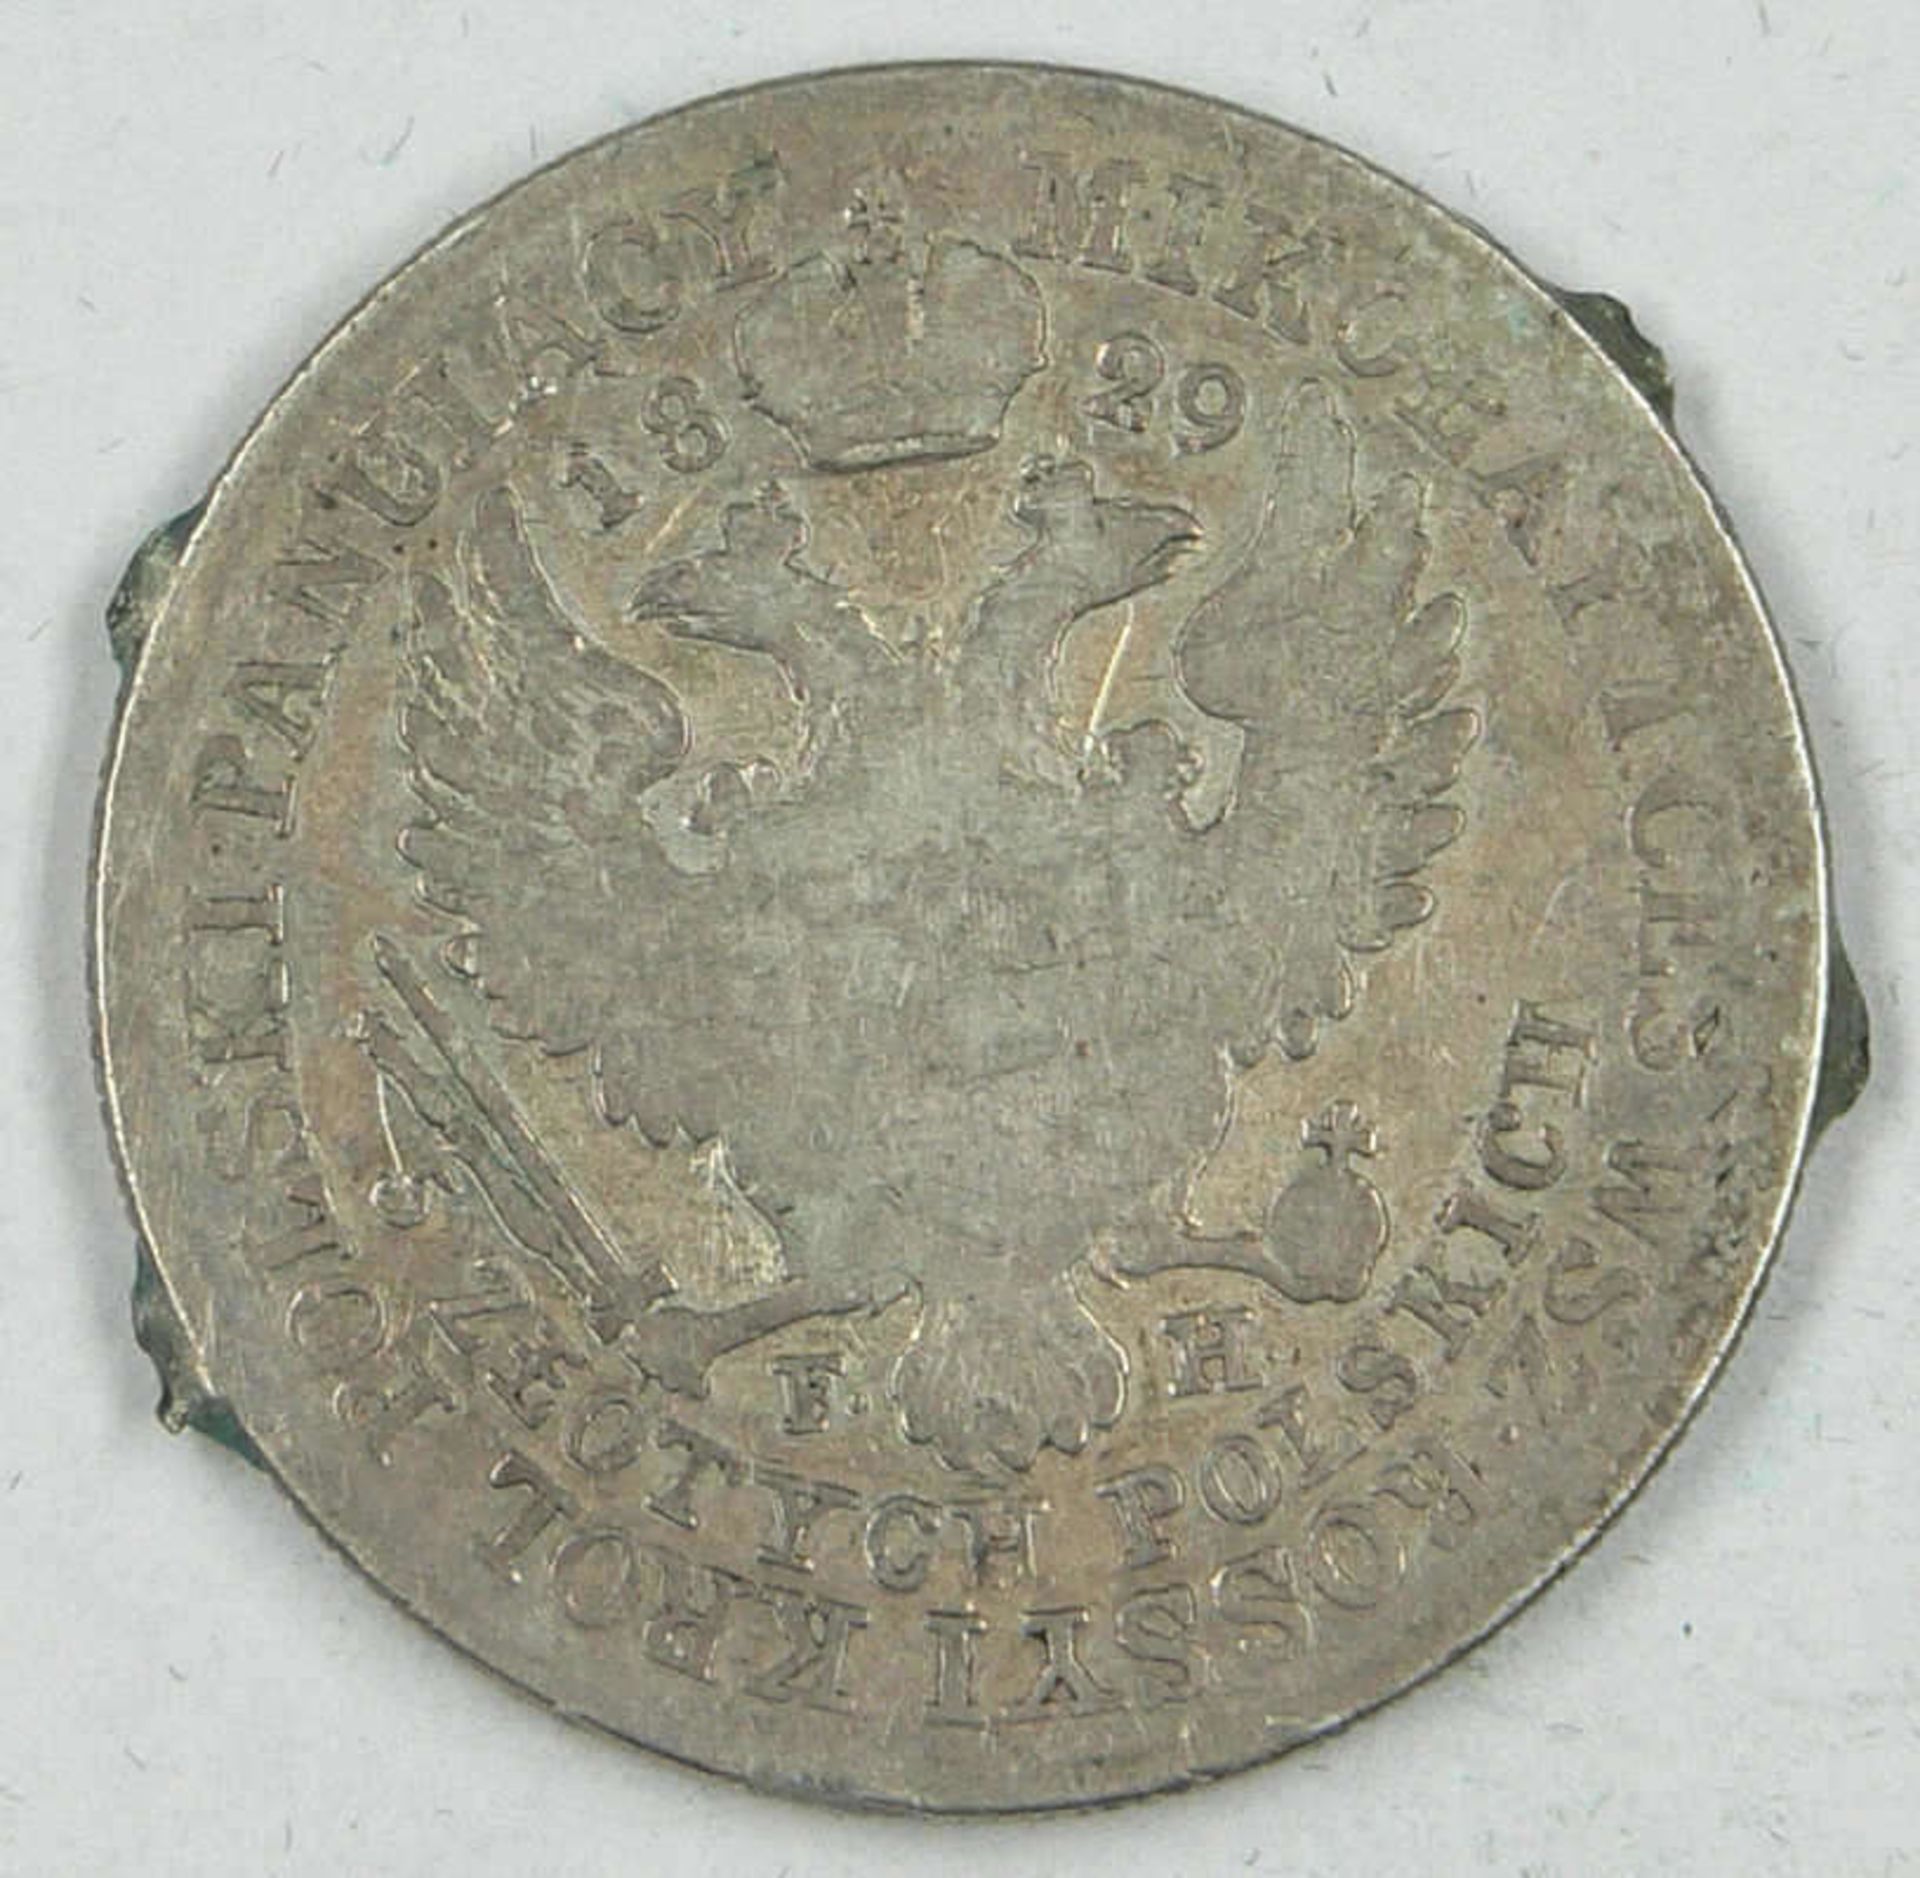 Polen 1829, Polen Alexander I. von Russland, 5 Zlotych mit Henkelspuren-Lötstellen, schönPoland 1829 - Bild 2 aus 2